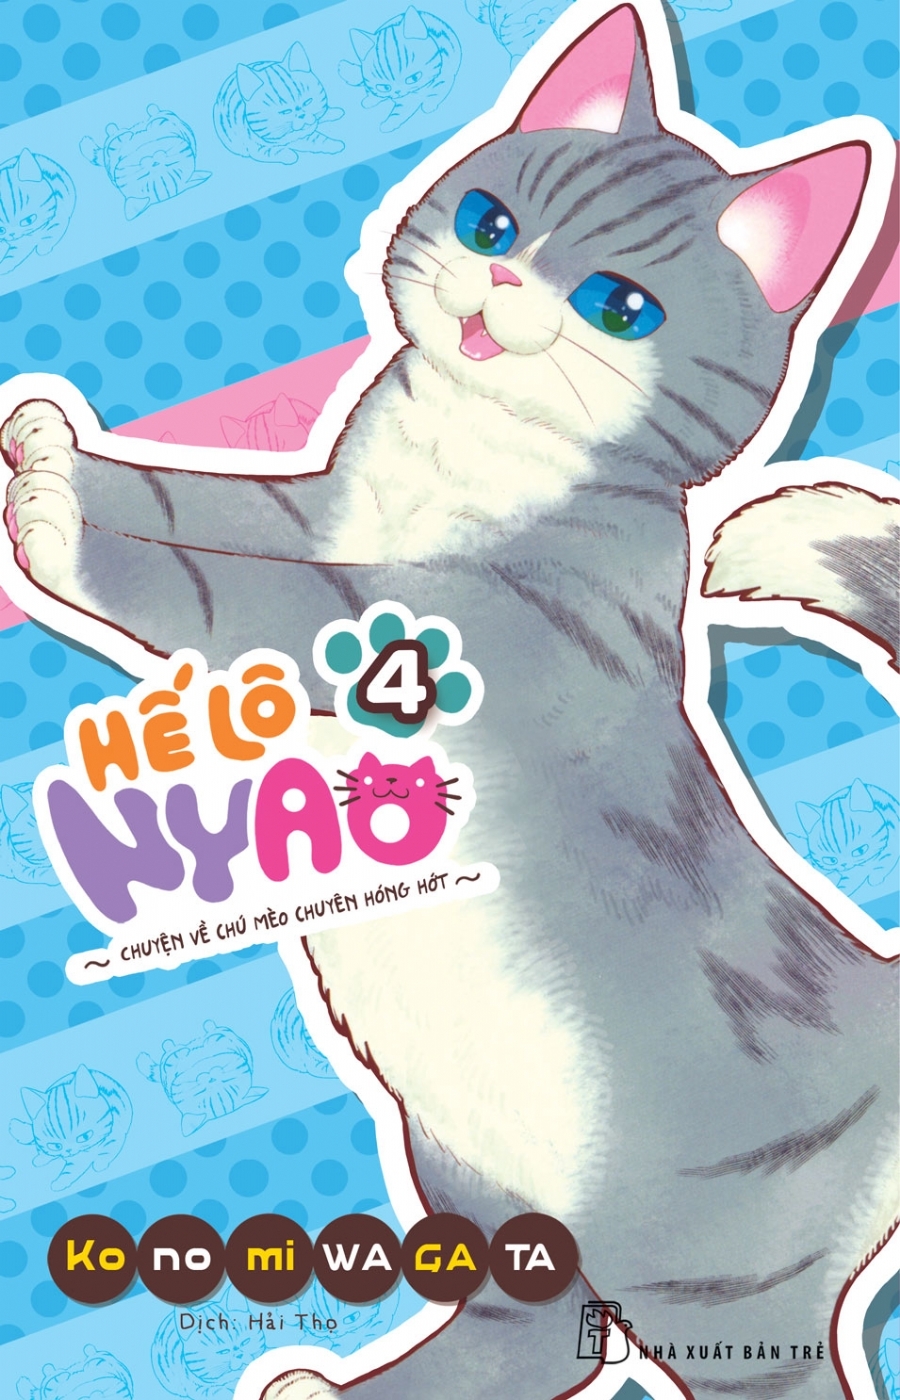 Sách Hế Lô Nyao - Chuyện Về Chú Mèo Chuyên Hóng Hớt - Tập 4